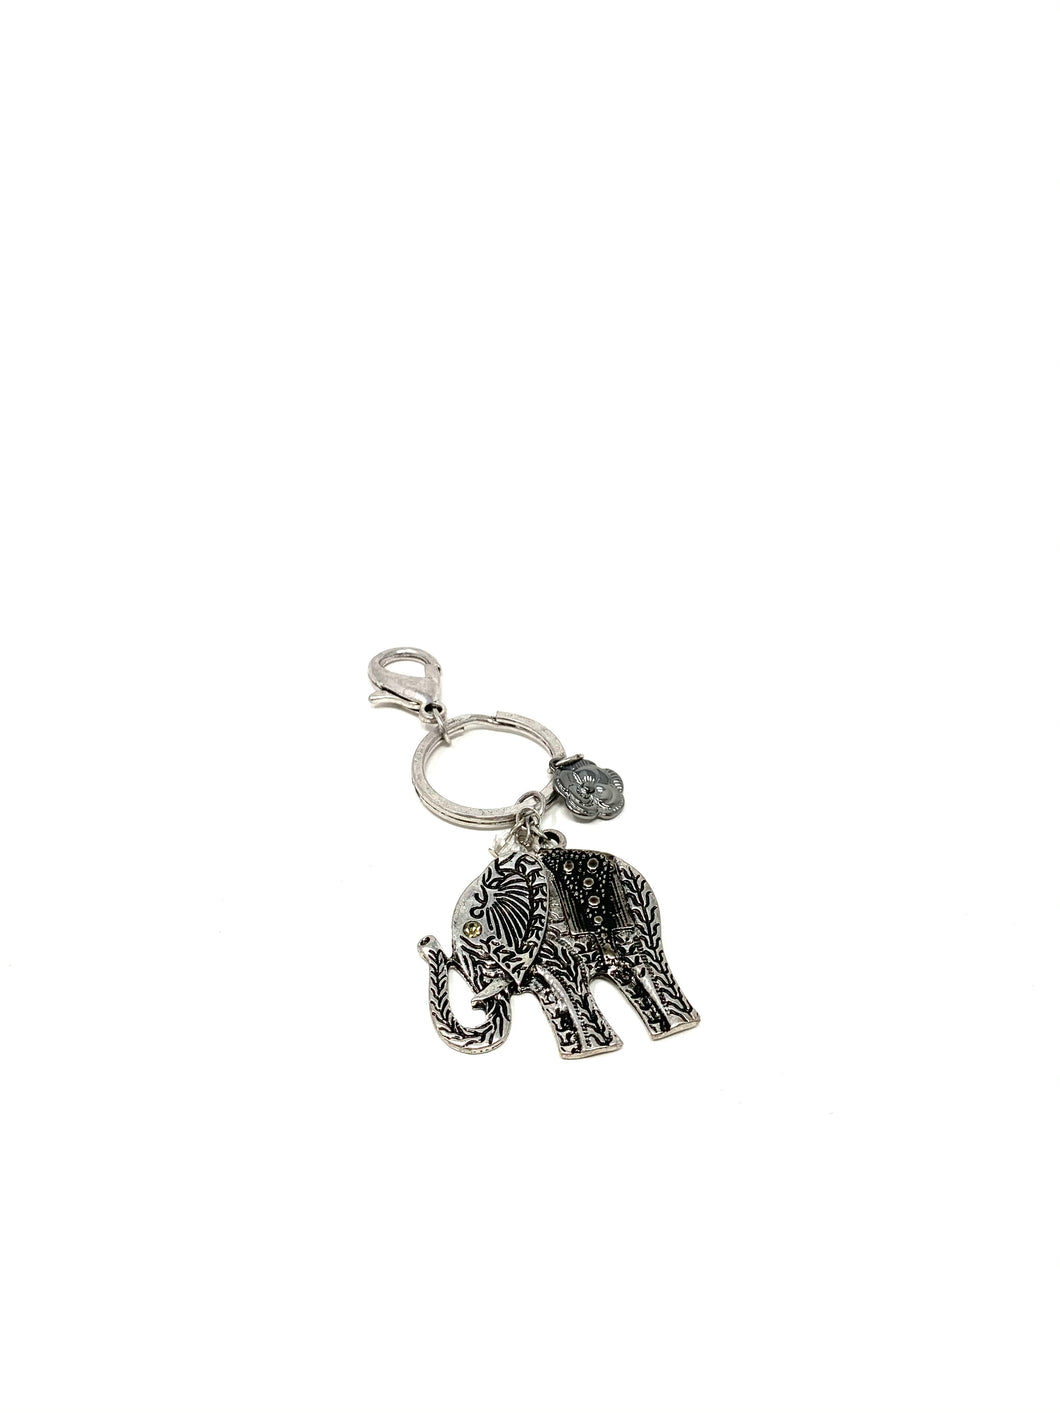 Lucky Elephant Charm Keychain